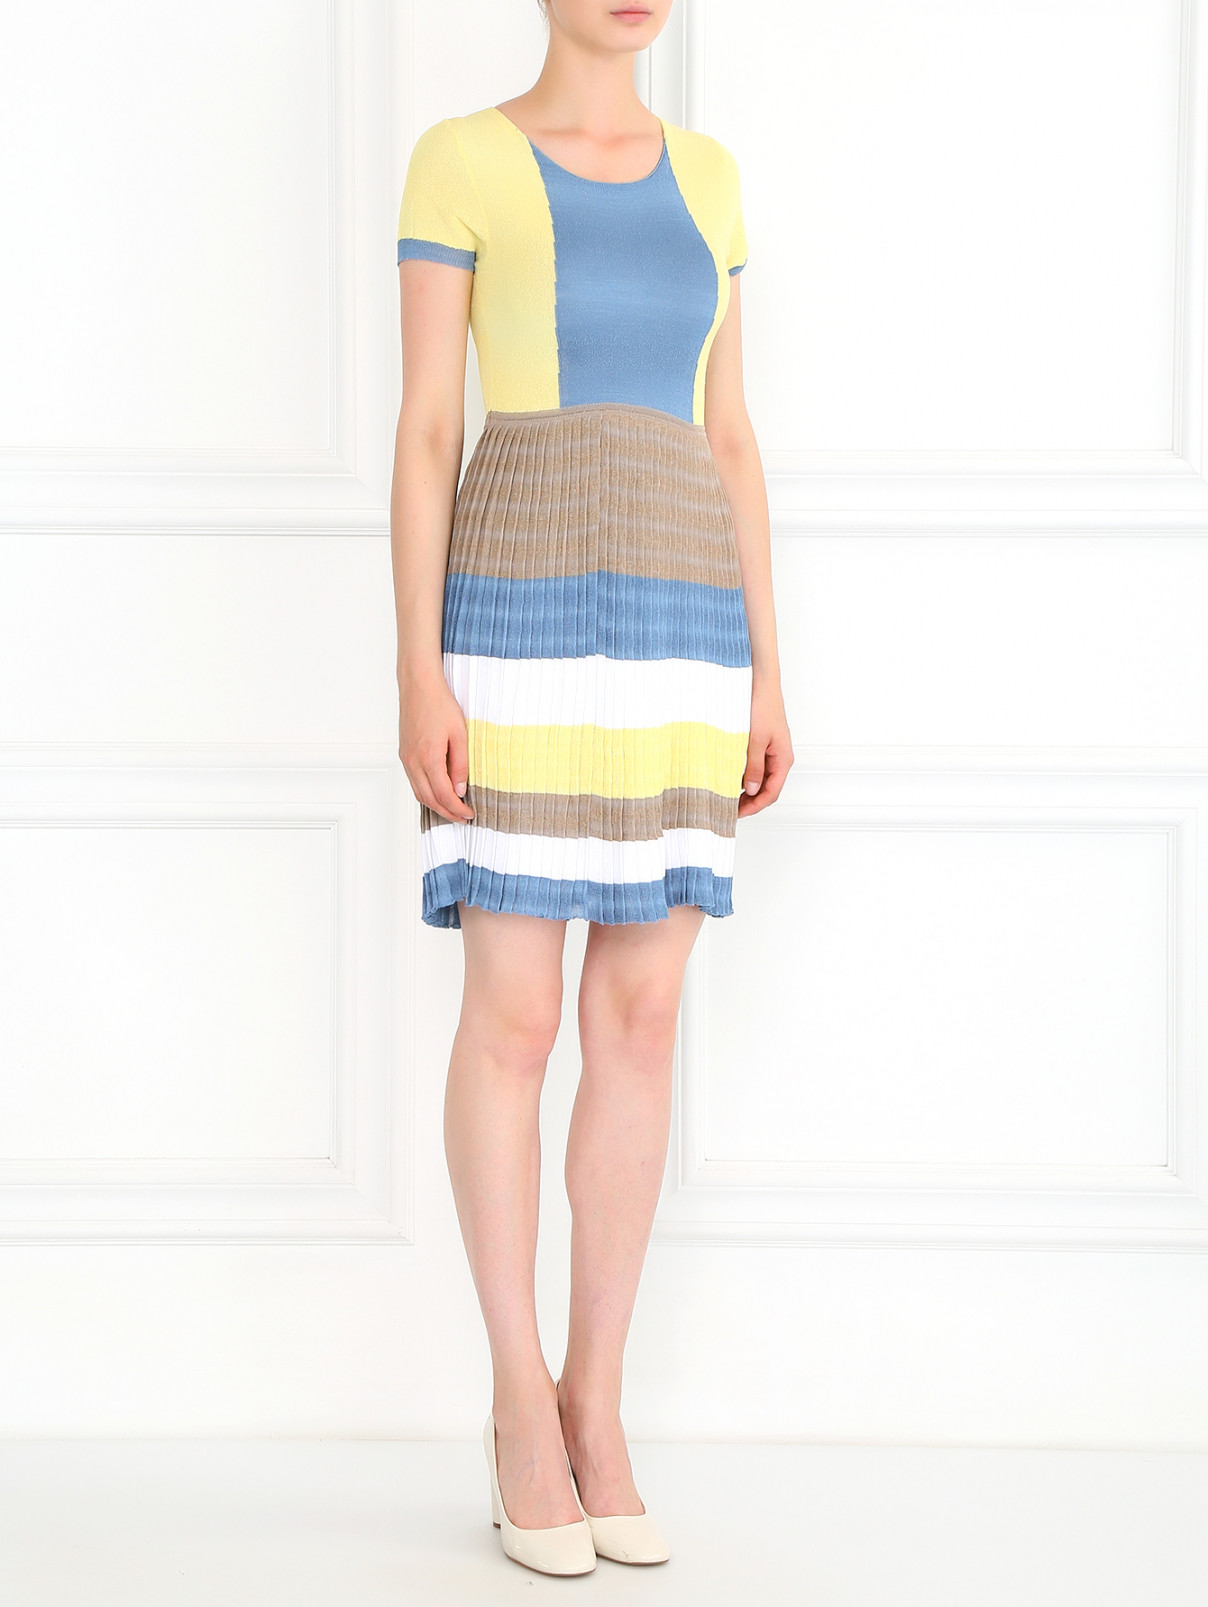 Трикотажное платье-мини с плиссированной юбкой Antonio Marras  –  Модель Общий вид  – Цвет:  Мультиколор